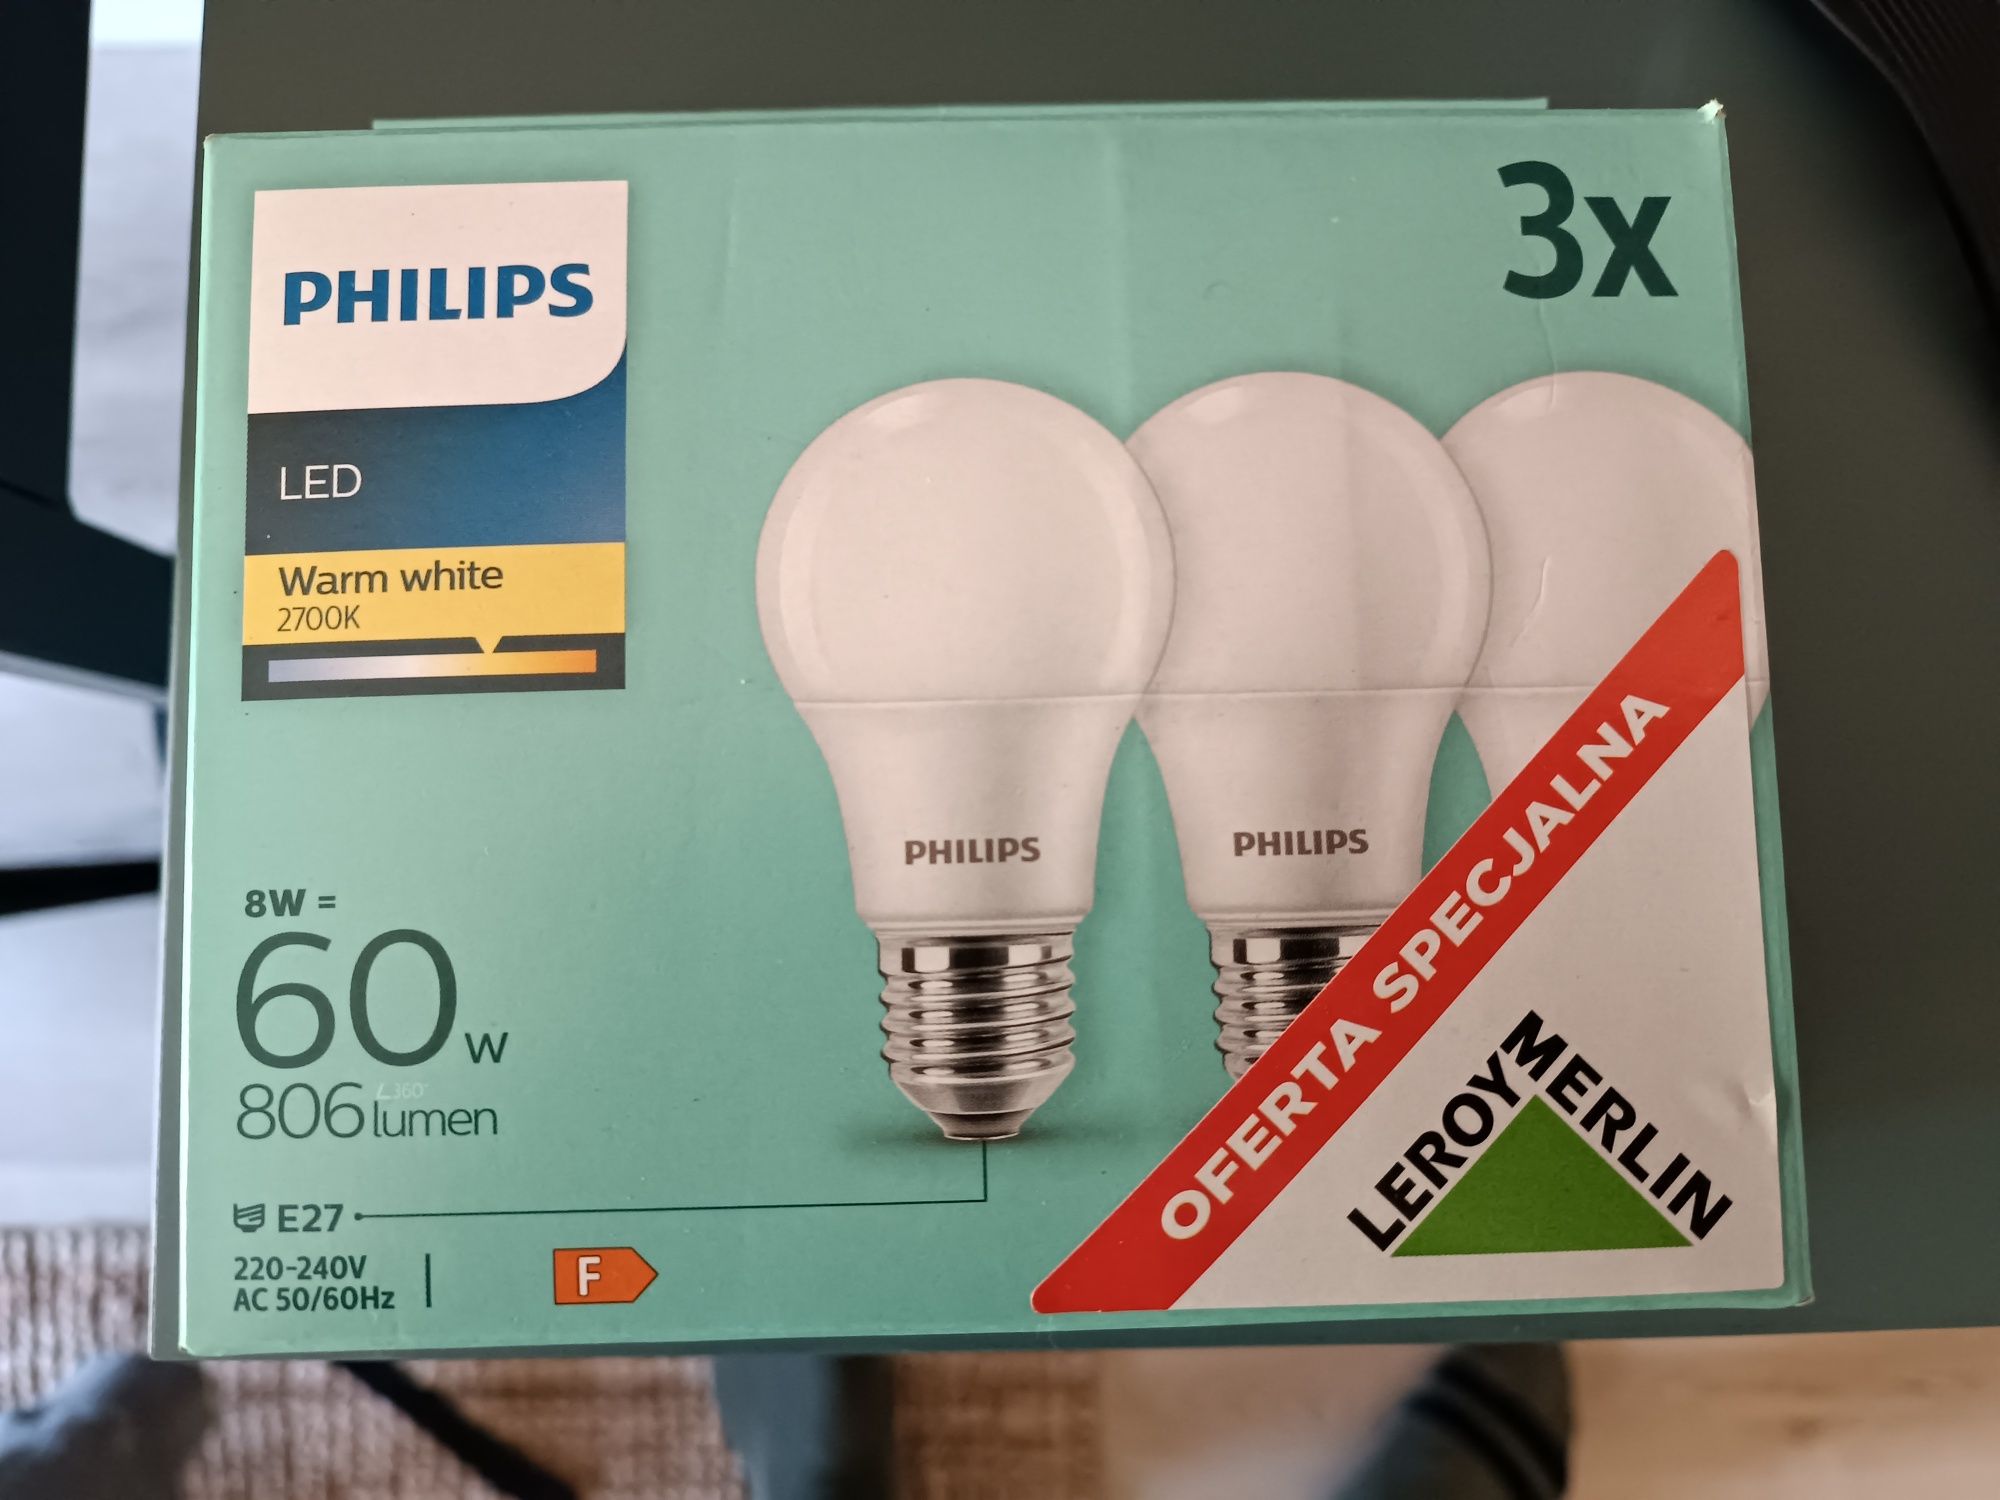 Żarówka LED Philips